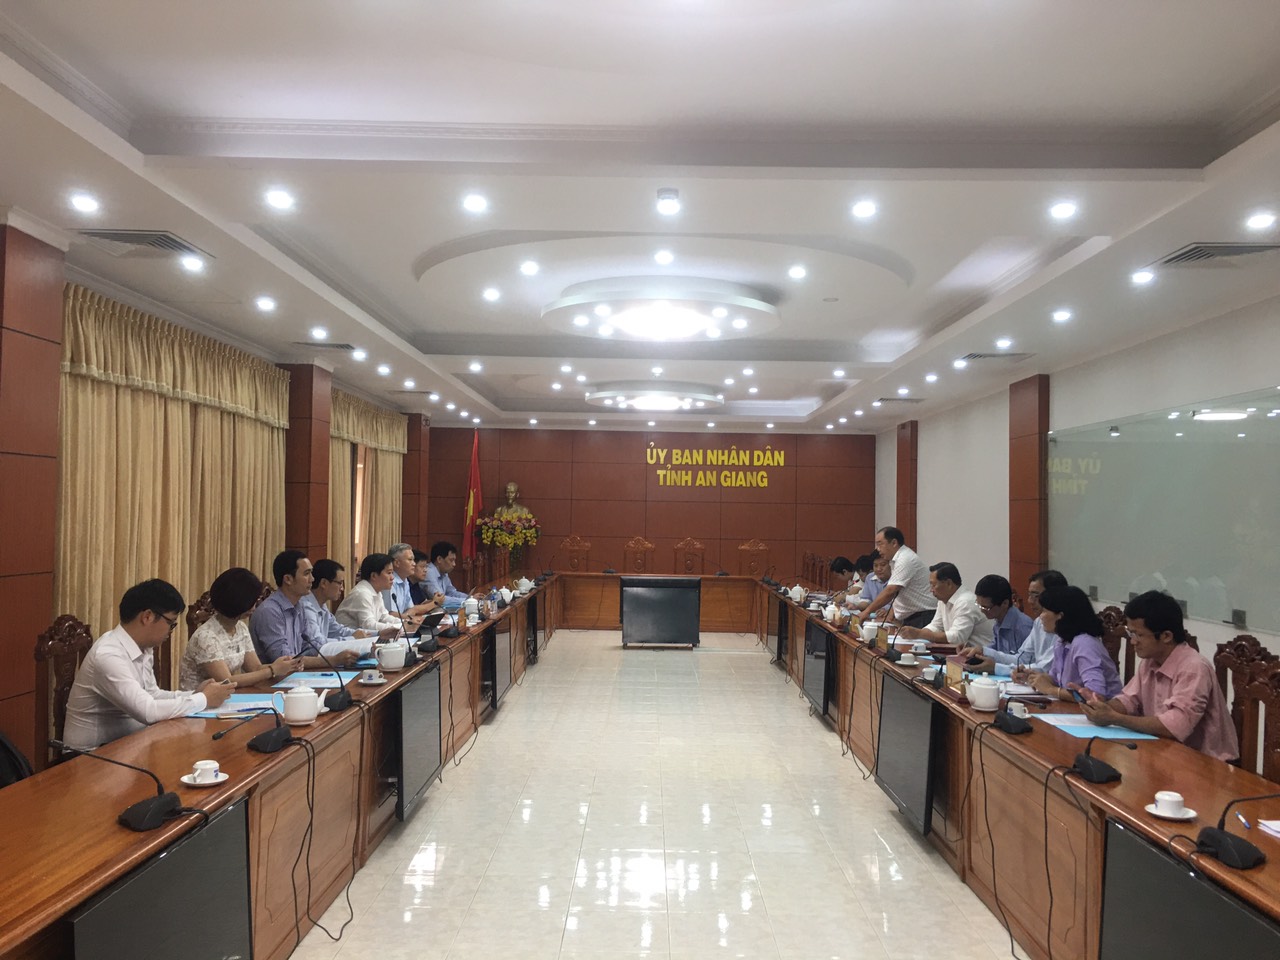 Đoàn giám sát của Tổng cục Tiêu chuẩn Đo lường Chất lượng Việt Nam đã có buổi làm việc với tỉnh An Giang về tình hình áp dụng Hệ thống quản lý chất lượng theo Tiêu chuẩn quốc gia TCVN ISO 9001:2008